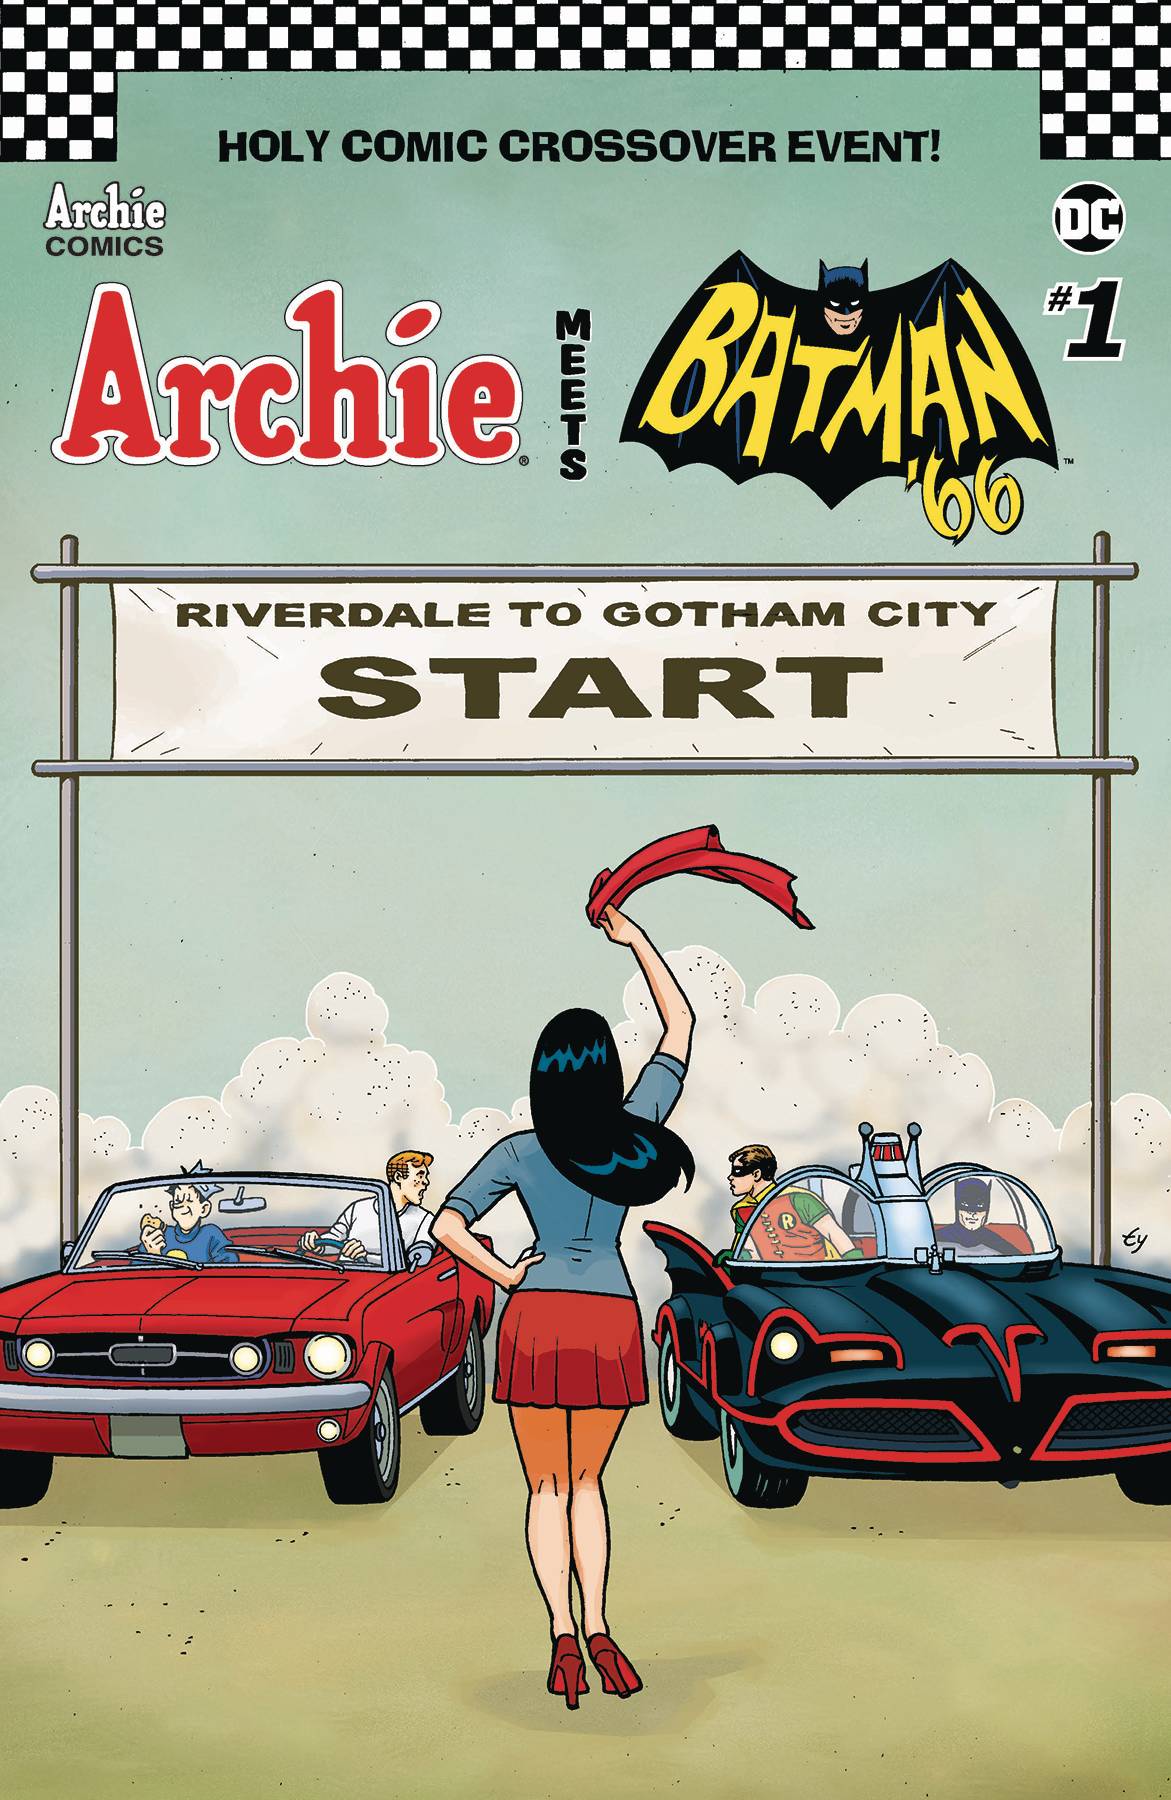 Archie Meets Batman 66 #1 Cover F Templeton